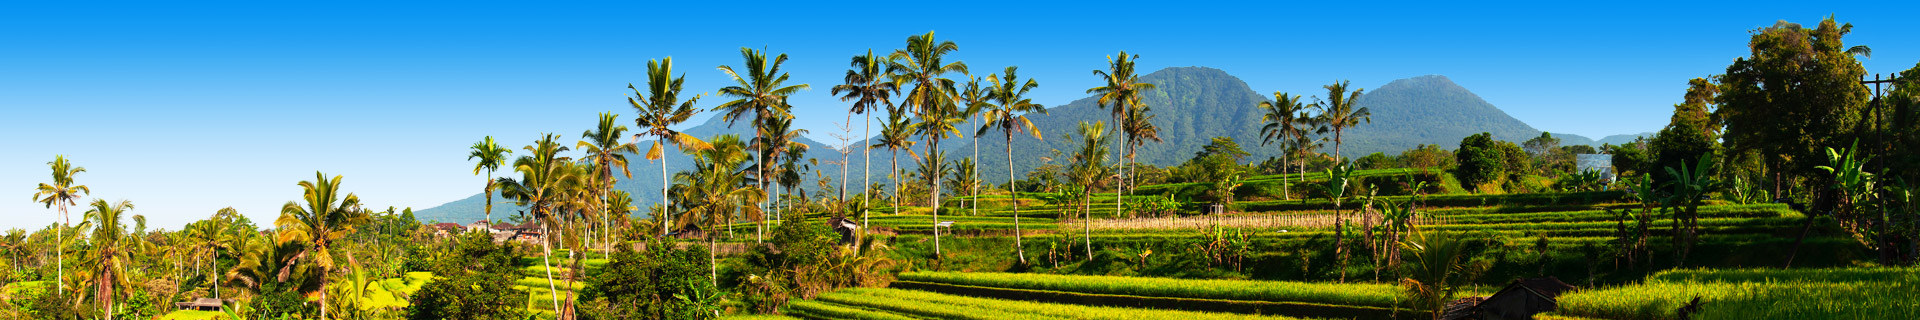 Groene rijstvelden met palmbomen op de achtergrond op Bali in Indonesië